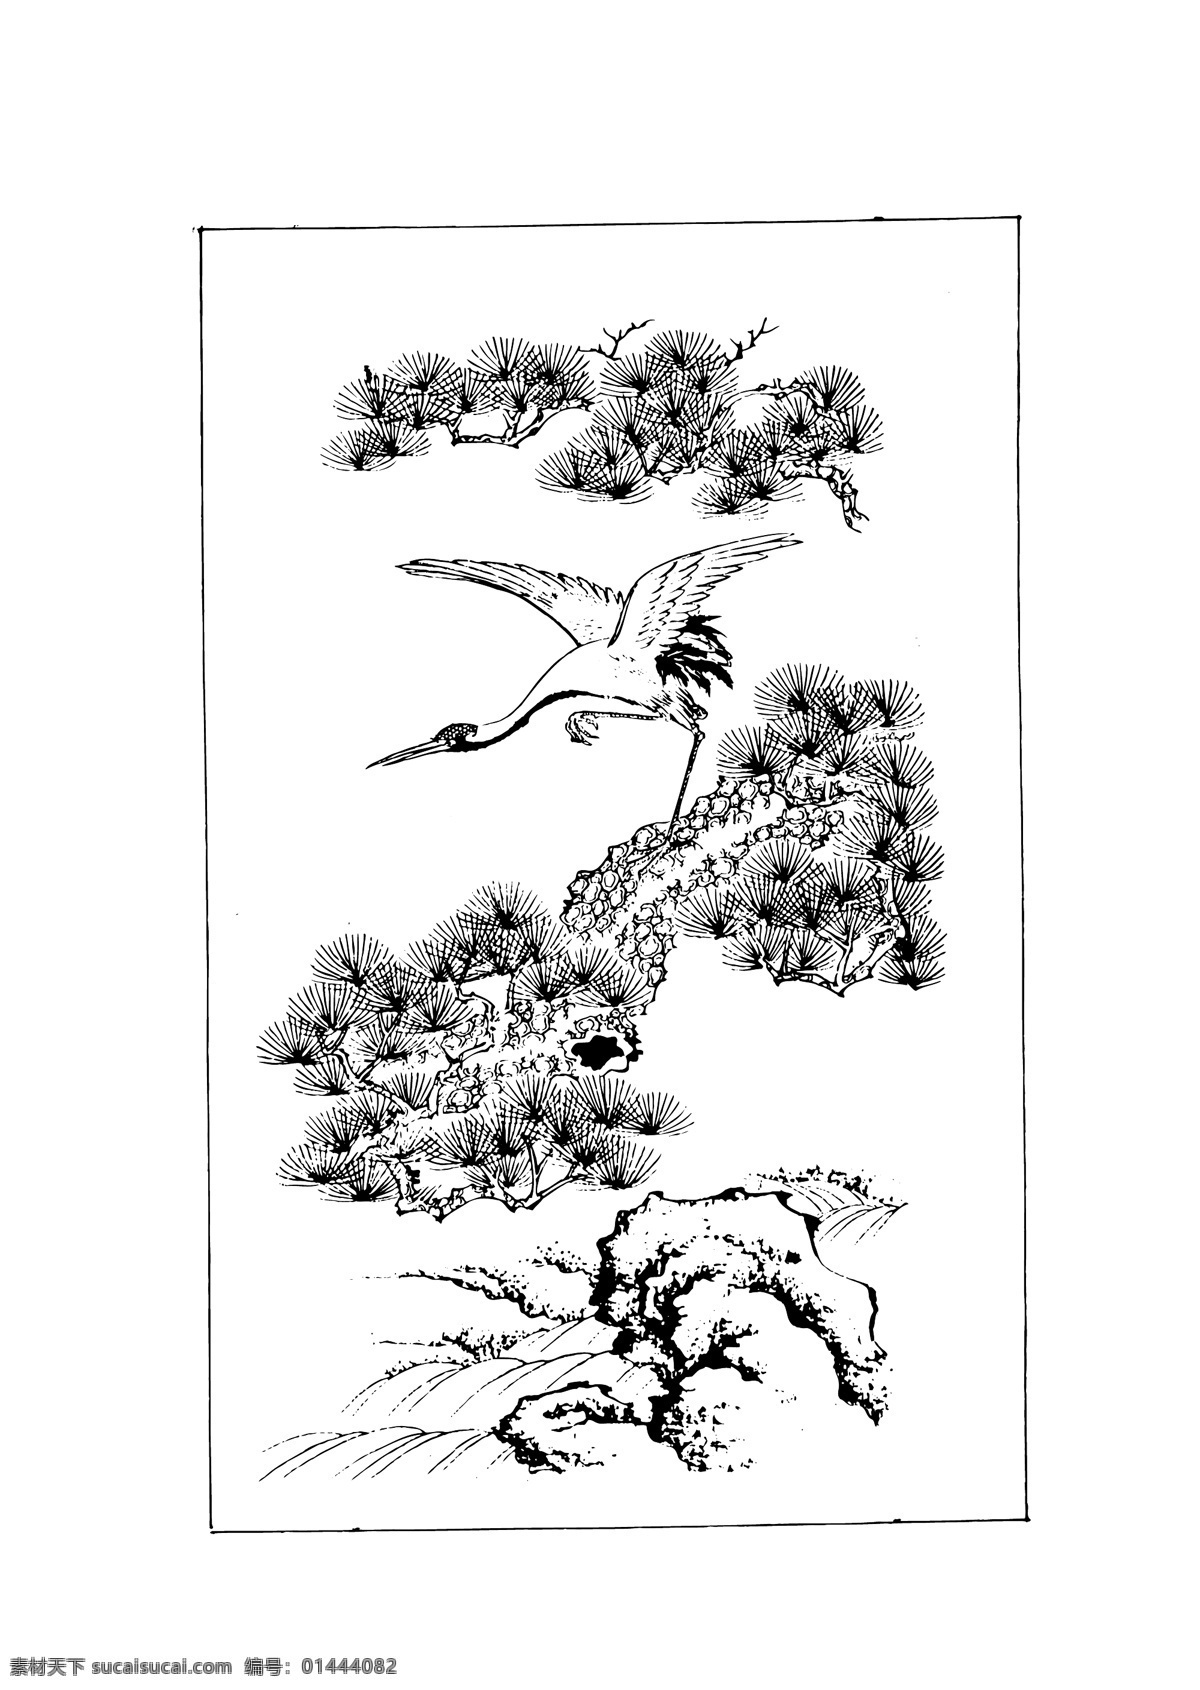 载体 中国 古典 绘画 材料 文化和艺术 中国涂料 矢量图 其他矢量图